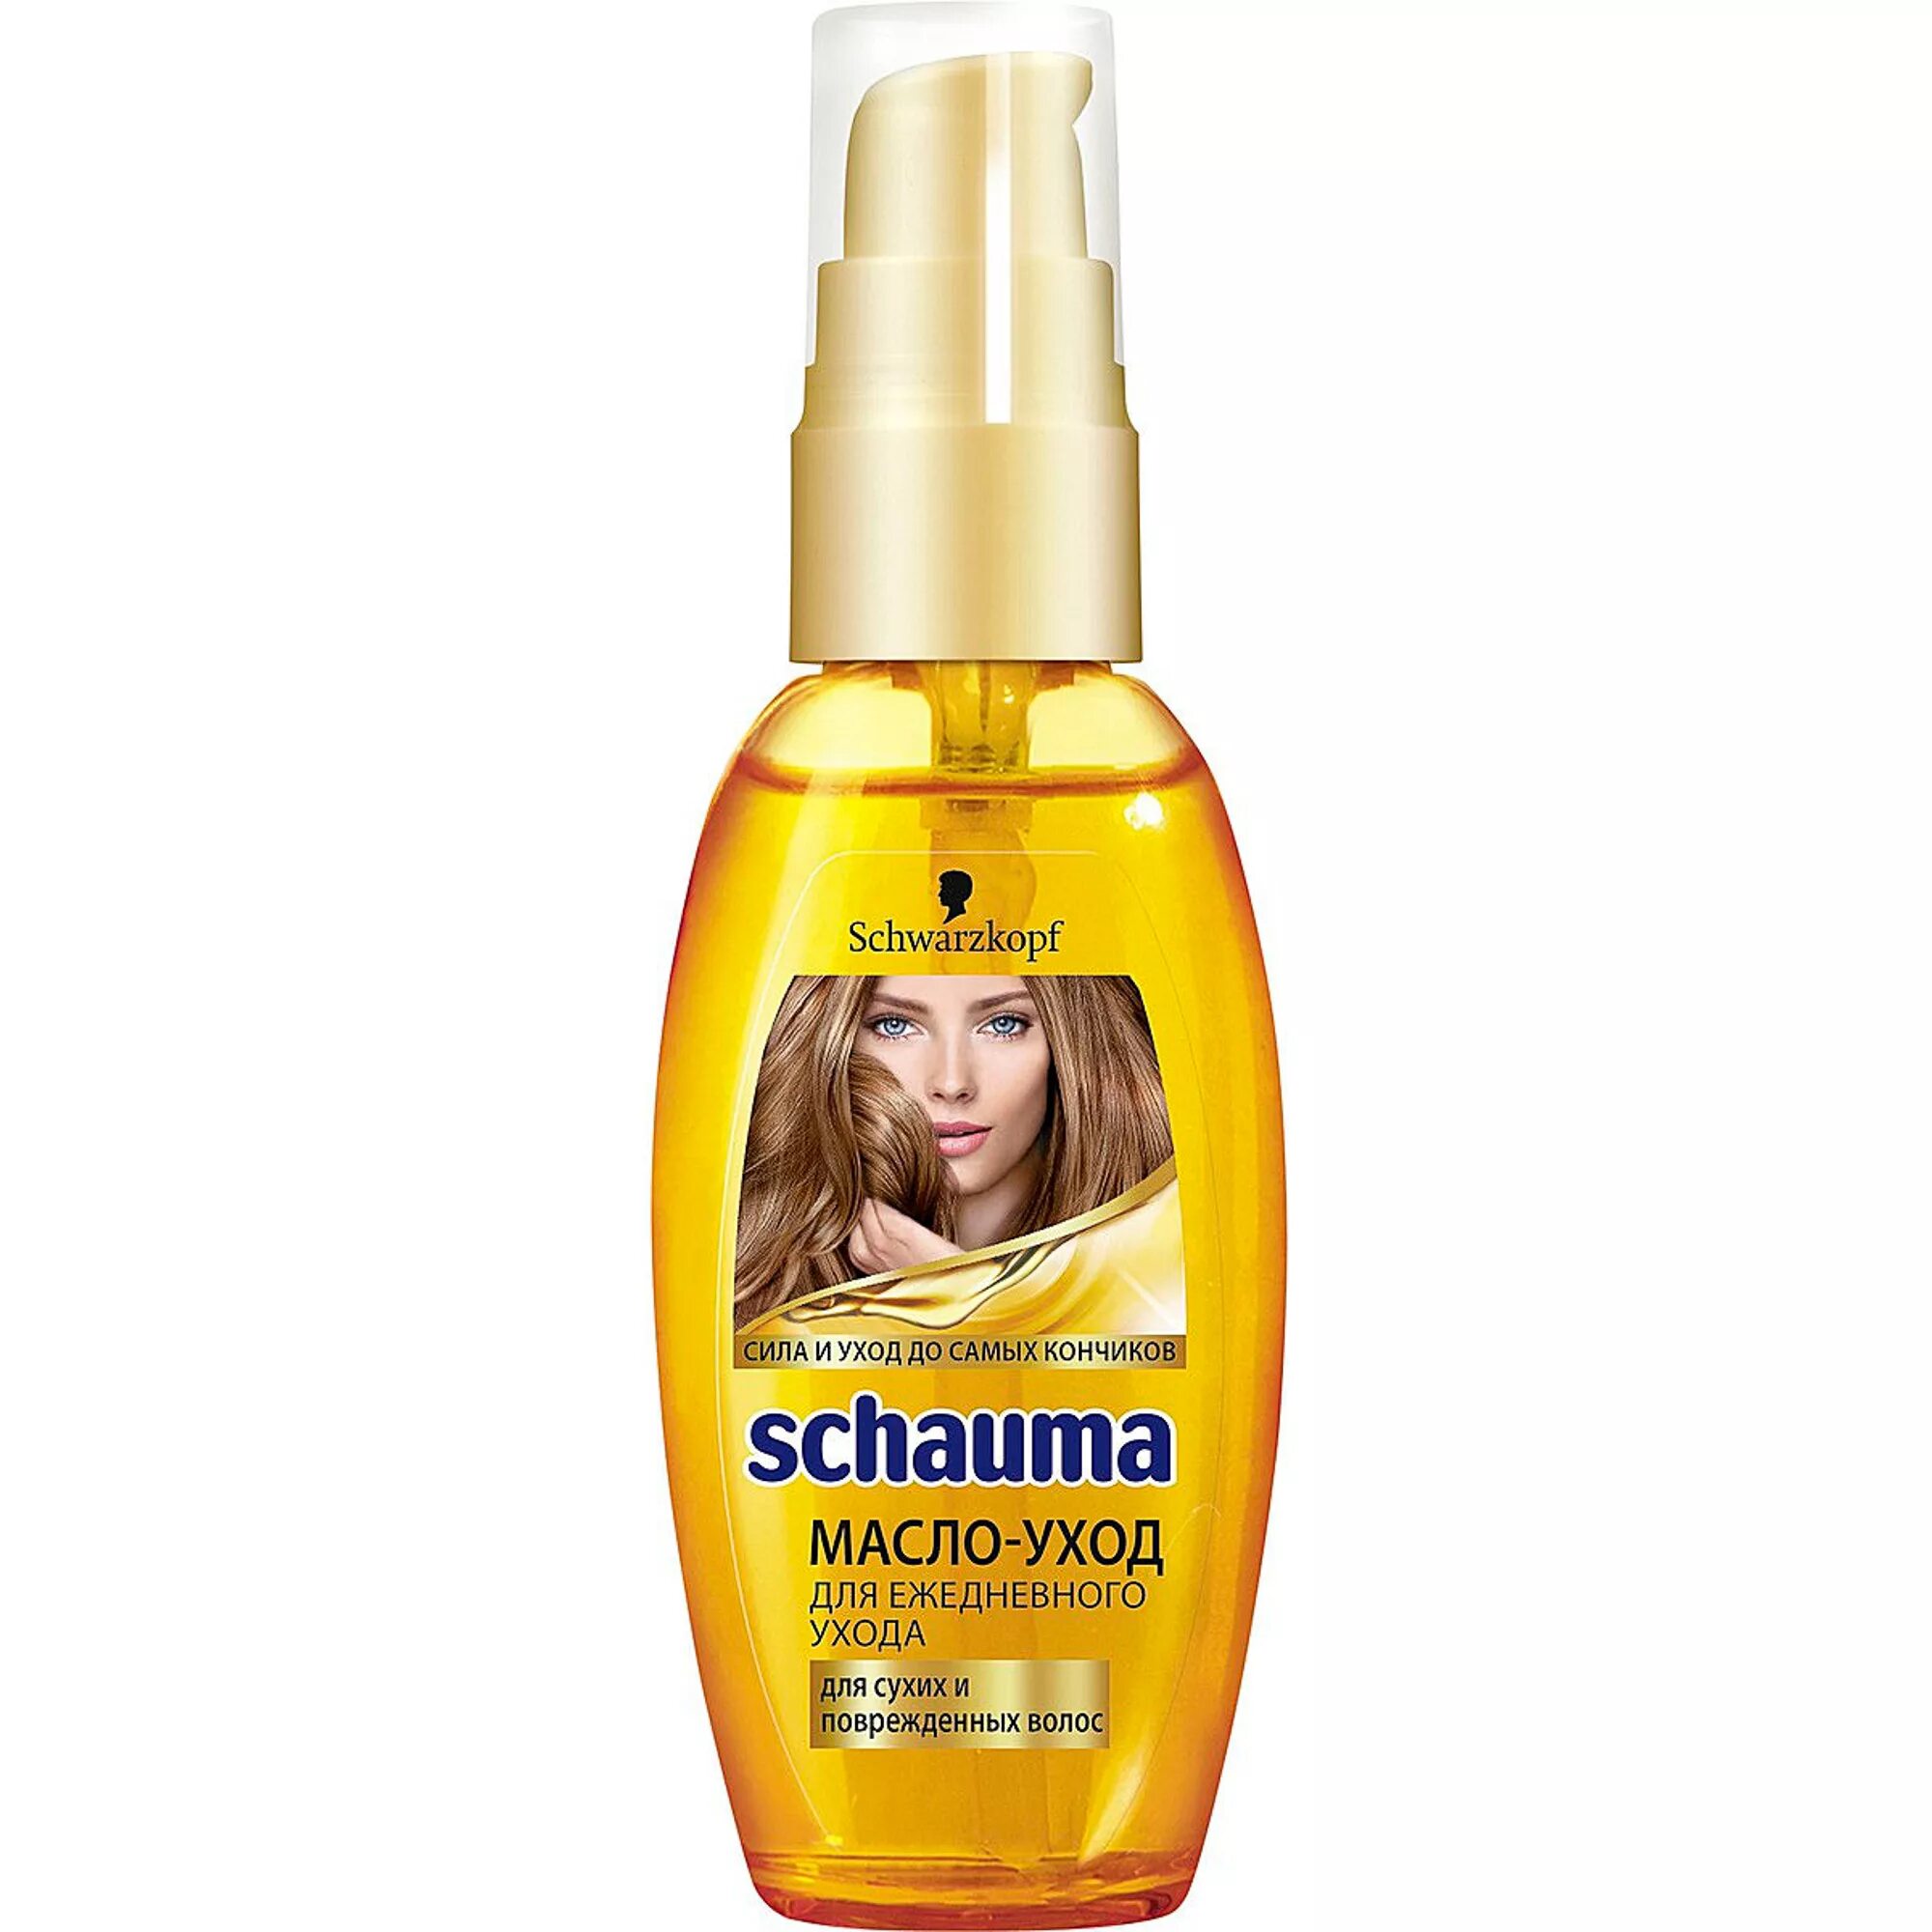 Масло для волос Schwarzkopf Schauma. Schauma масло для волос 2015 год. Кондиционер для волос Schauma 7 масел. Масло для сухих и поврежденных волос. Масло шампунь для волос отзывы